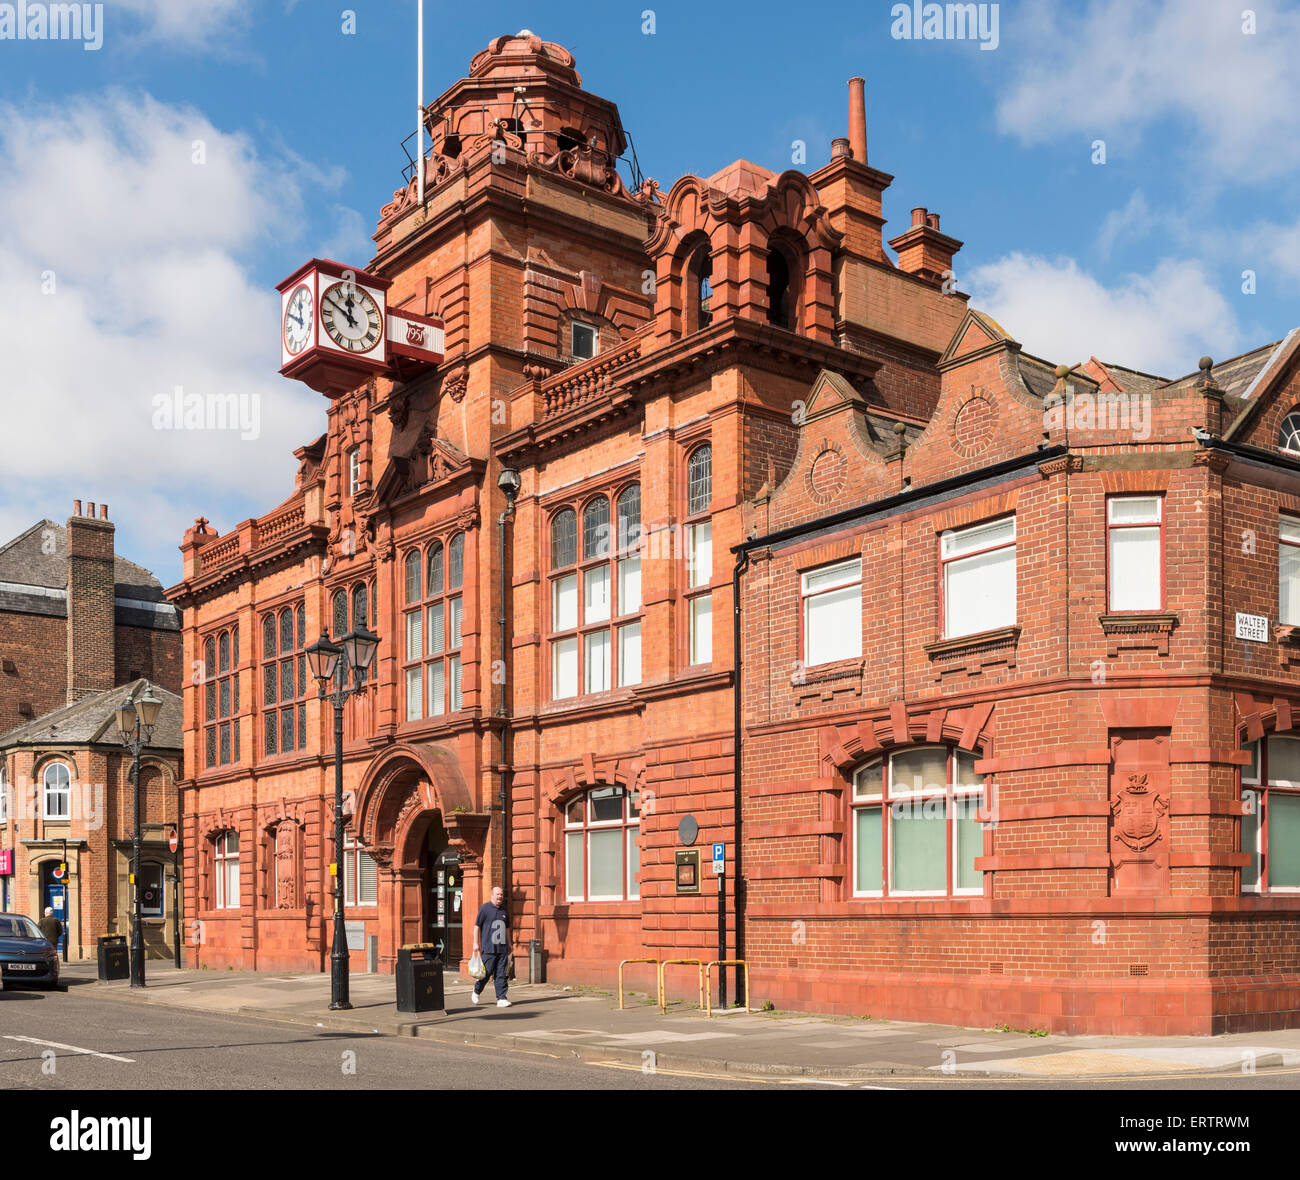 Jarrow Municipio dove il famoso Jarrow marzo ha cominciato, Jarrow, Tyne and Wear, England, Regno Unito Foto Stock